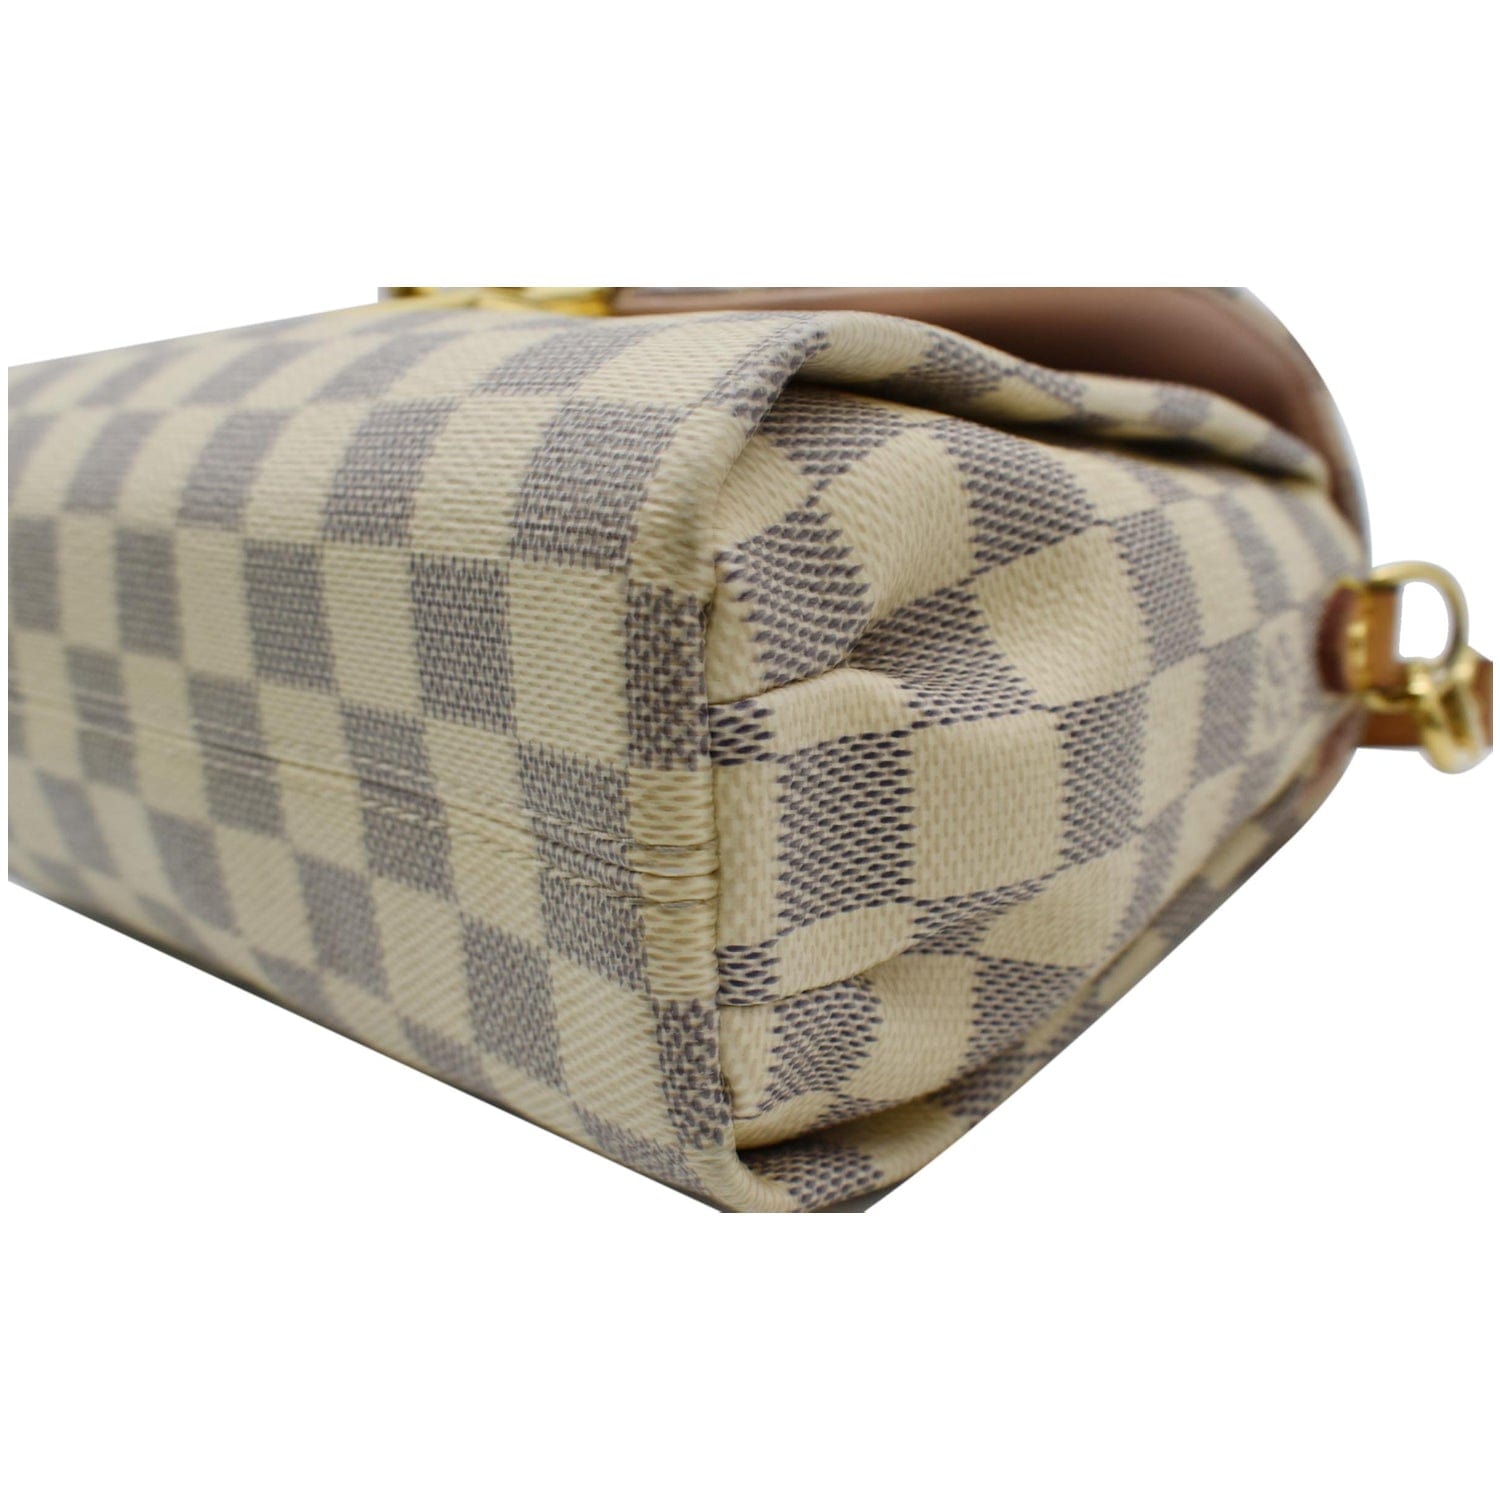 Louis Vuitton Damier Azur Croisette w/ Strap - Neutrals Handle Bags,  Handbags - LOU810149